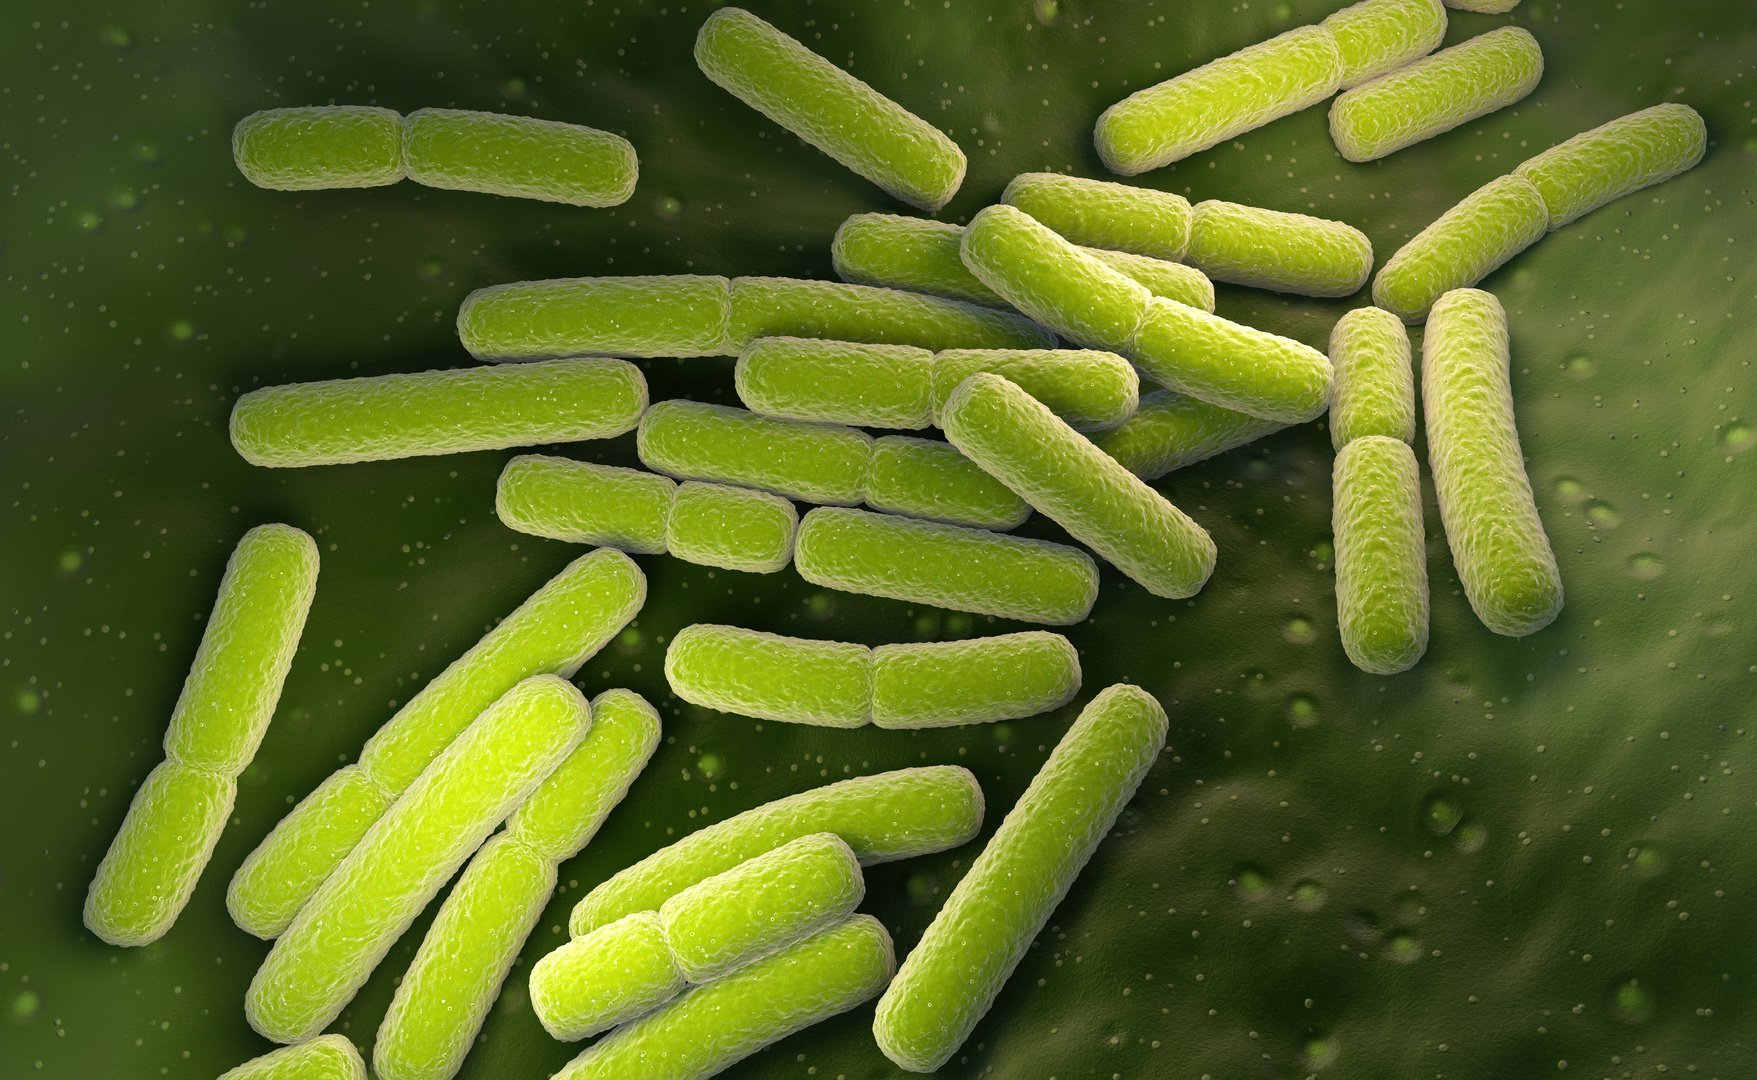 Escherichia coli w pochwie i enterococcus w pochwie – co to znaczy? - wylecz.to